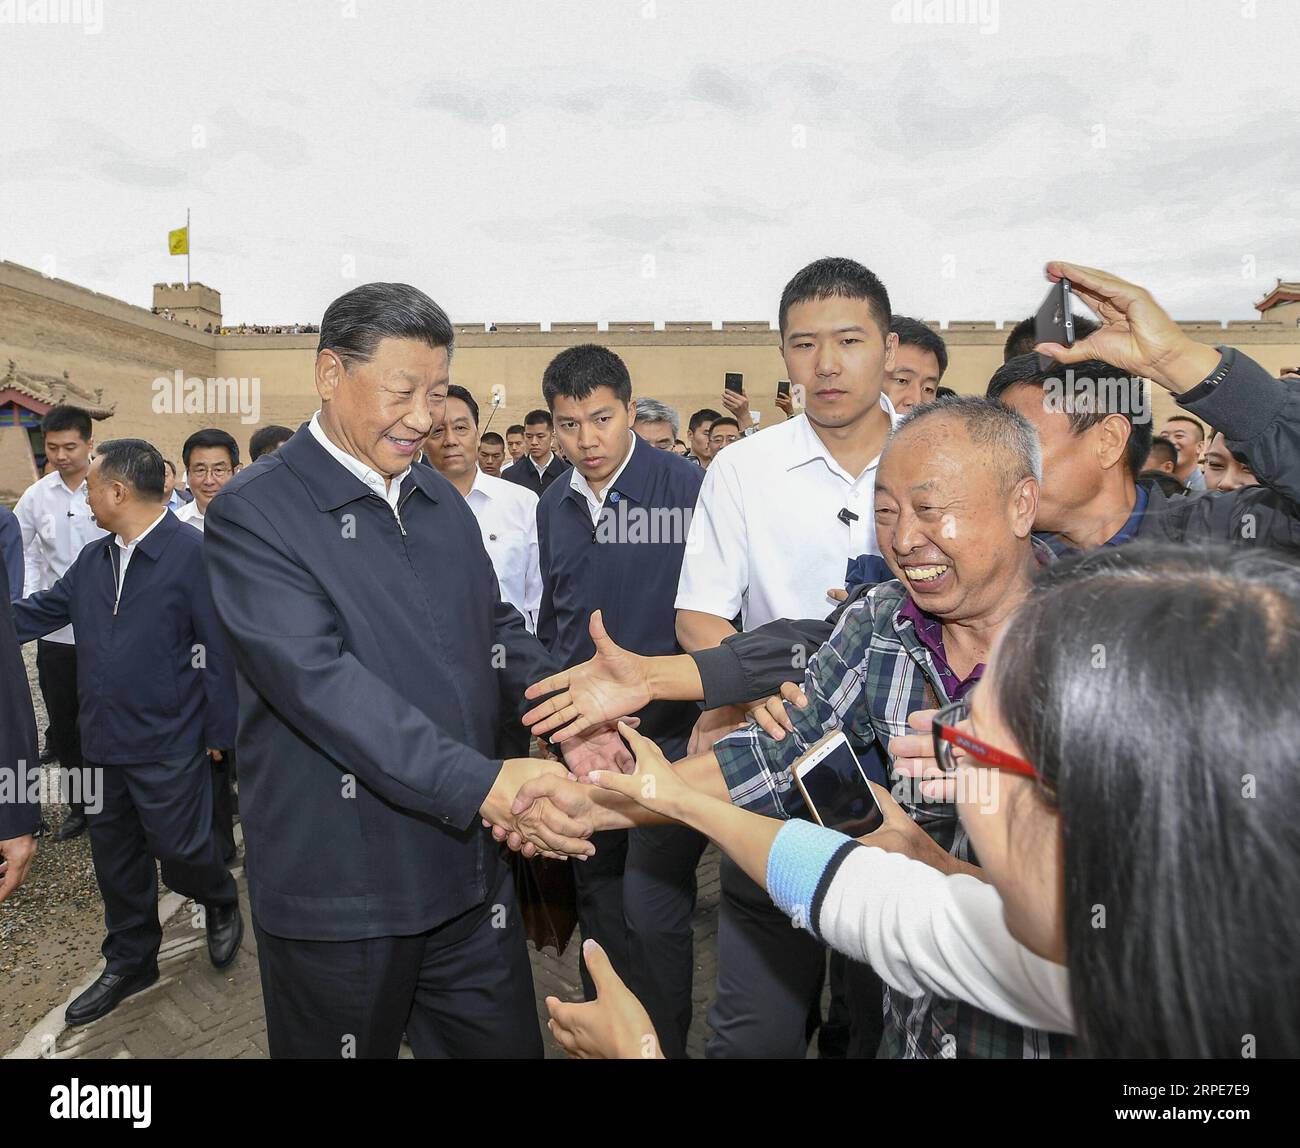 (190820) -- JIAYUGUAN, 20 agosto 2019 -- il presidente cinese Xi Jinping, anche segretario generale del Comitato centrale del Partito Comunista Cinese e presidente della Commissione militare centrale, visita il passo Jiayu, una famosa parte della grande Muraglia nella città di Jiayuguan, durante il suo tour di ispezione nella provincia del Gansu della Cina nord-occidentale, 20 agosto 2019. XI ascoltò anche un'introduzione al background storico e culturale della grande Muraglia e dei passi nel corridoio di Hexi, parte dell'antica via della Seta nella Cina nord-occidentale. CHINA-GANSU-XI JINPING-INSPECTION (CN) XIEXHUANCHI PUBLICATIONXNOTXINXC Foto Stock